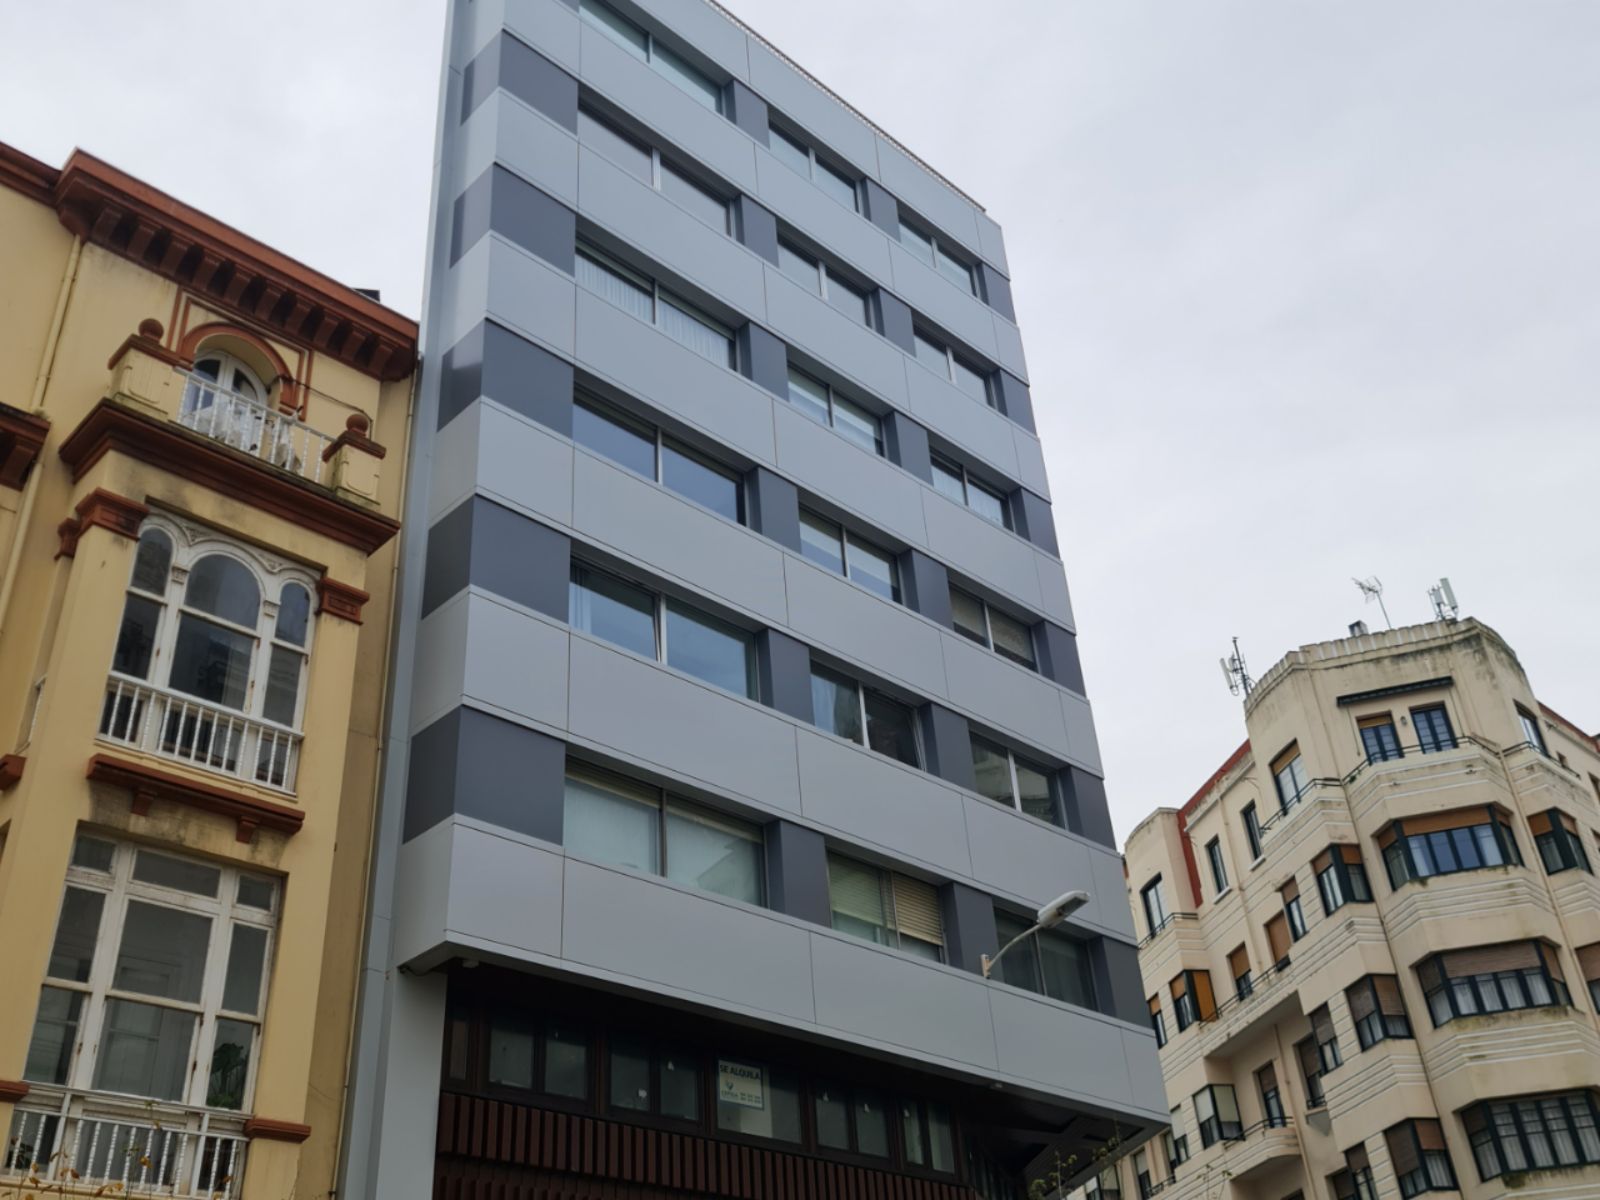 Ejecución de la renovación de fachadas de edificio en A Coruña